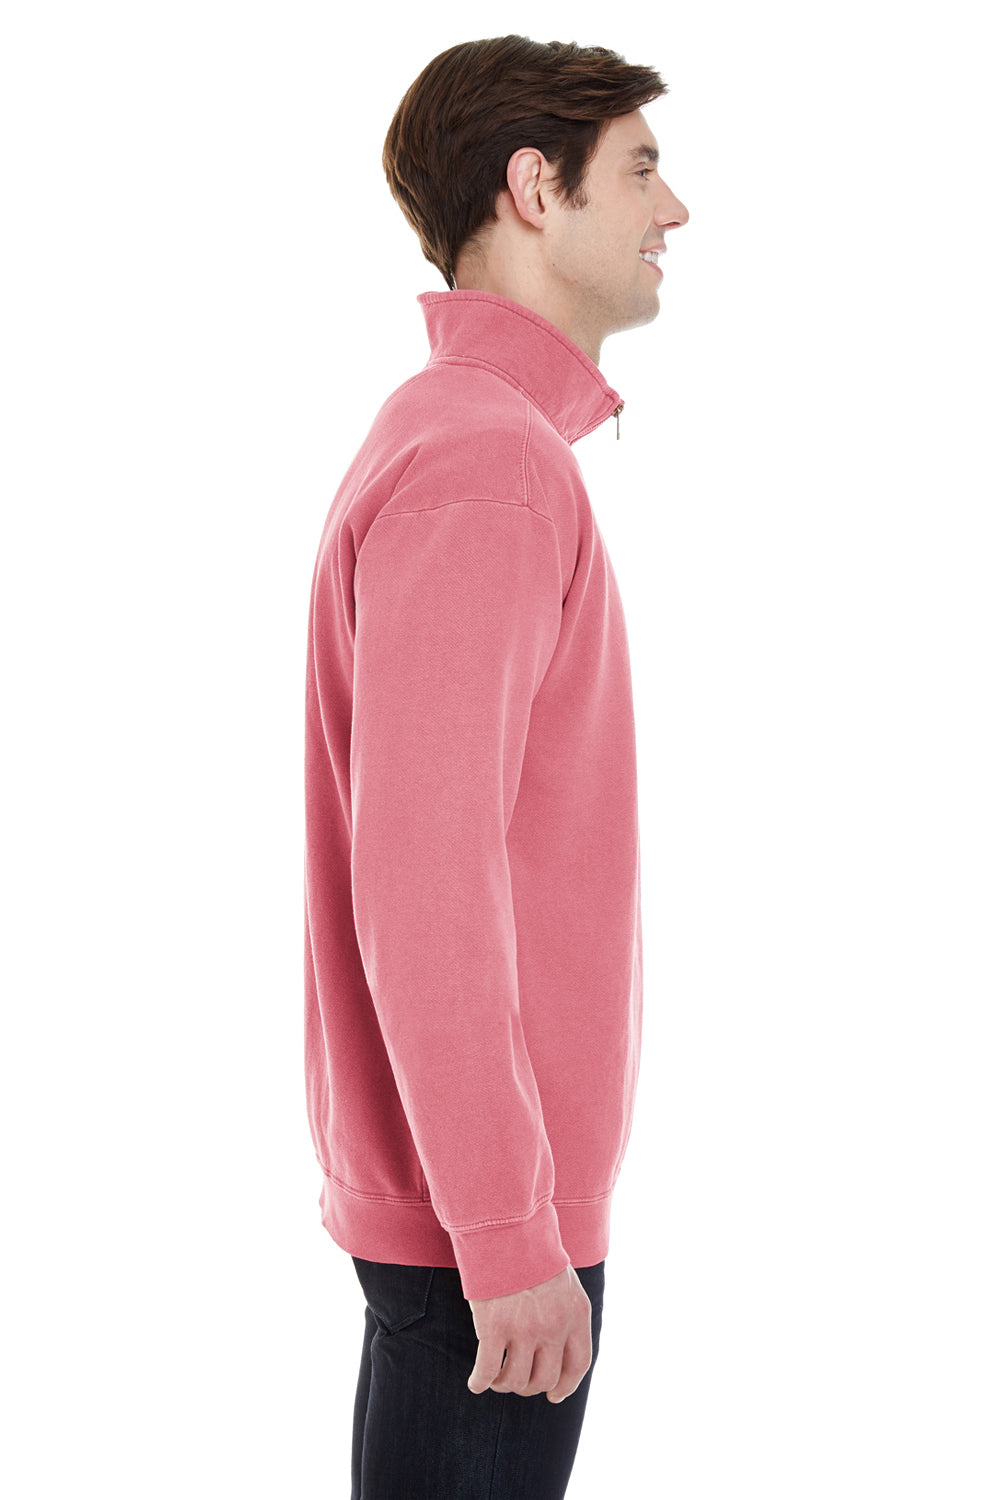 Comfort Colors 1580 Mens Crimson Red 1/4 Zip Sweatshirt